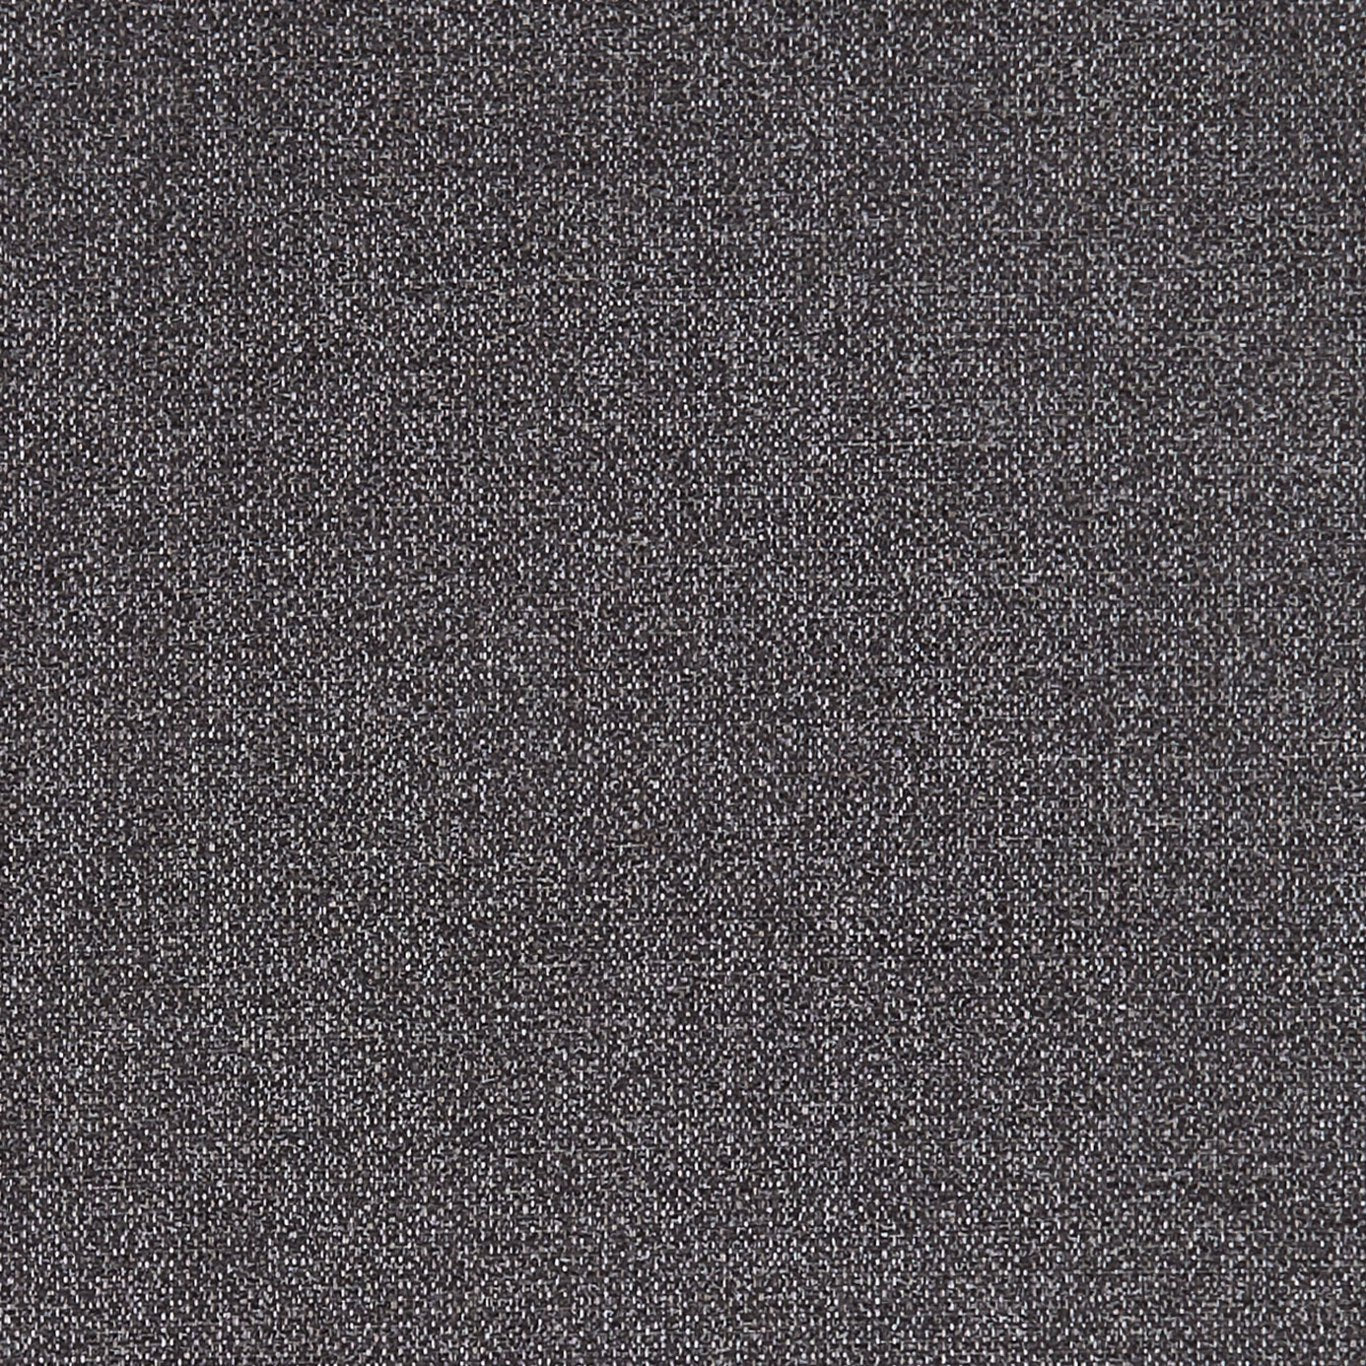 Acies Fabric by Clarke & Clarke - F1416/03 - Charcoal